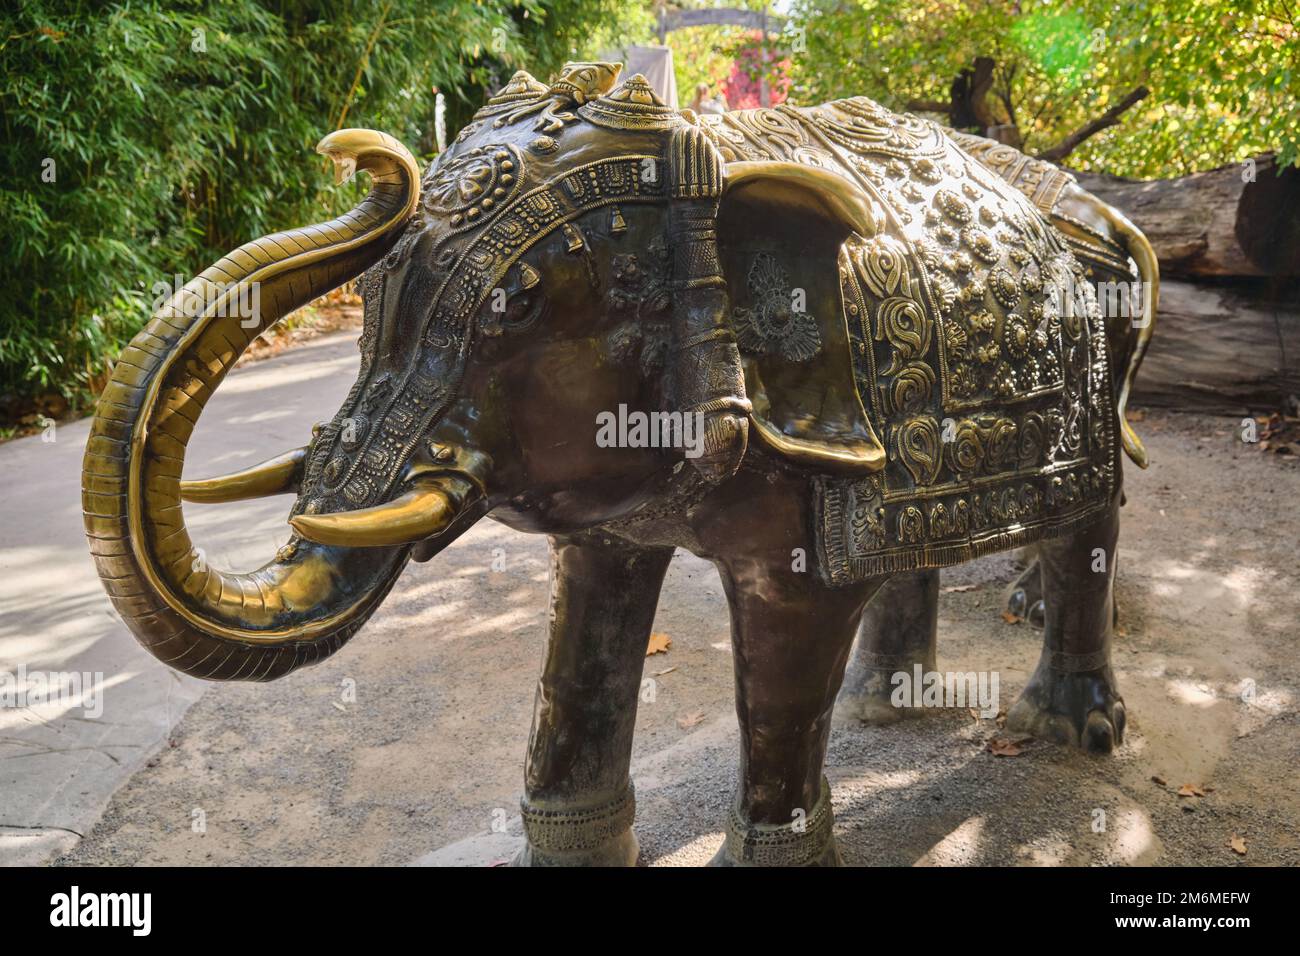 Antica statua dorata di un elefante indiano nel parco della città all'aperto, non c'è gente Foto Stock